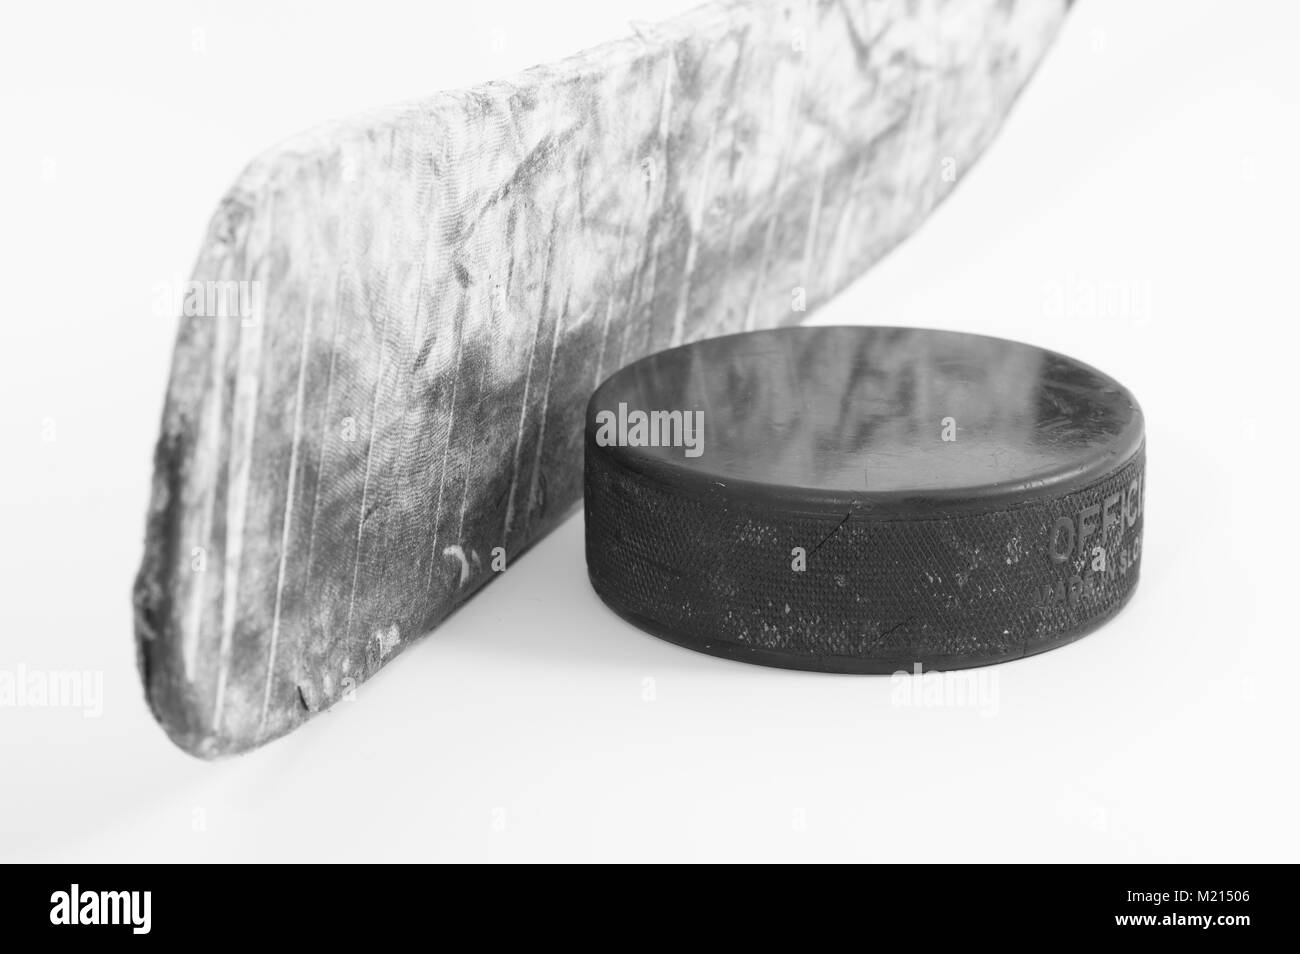 Primo piano di hockey su ghiaccio stick blade avvolto in rigata nastro bianco e un usato puck su sfondo bianco; immagine monocromatica Foto Stock